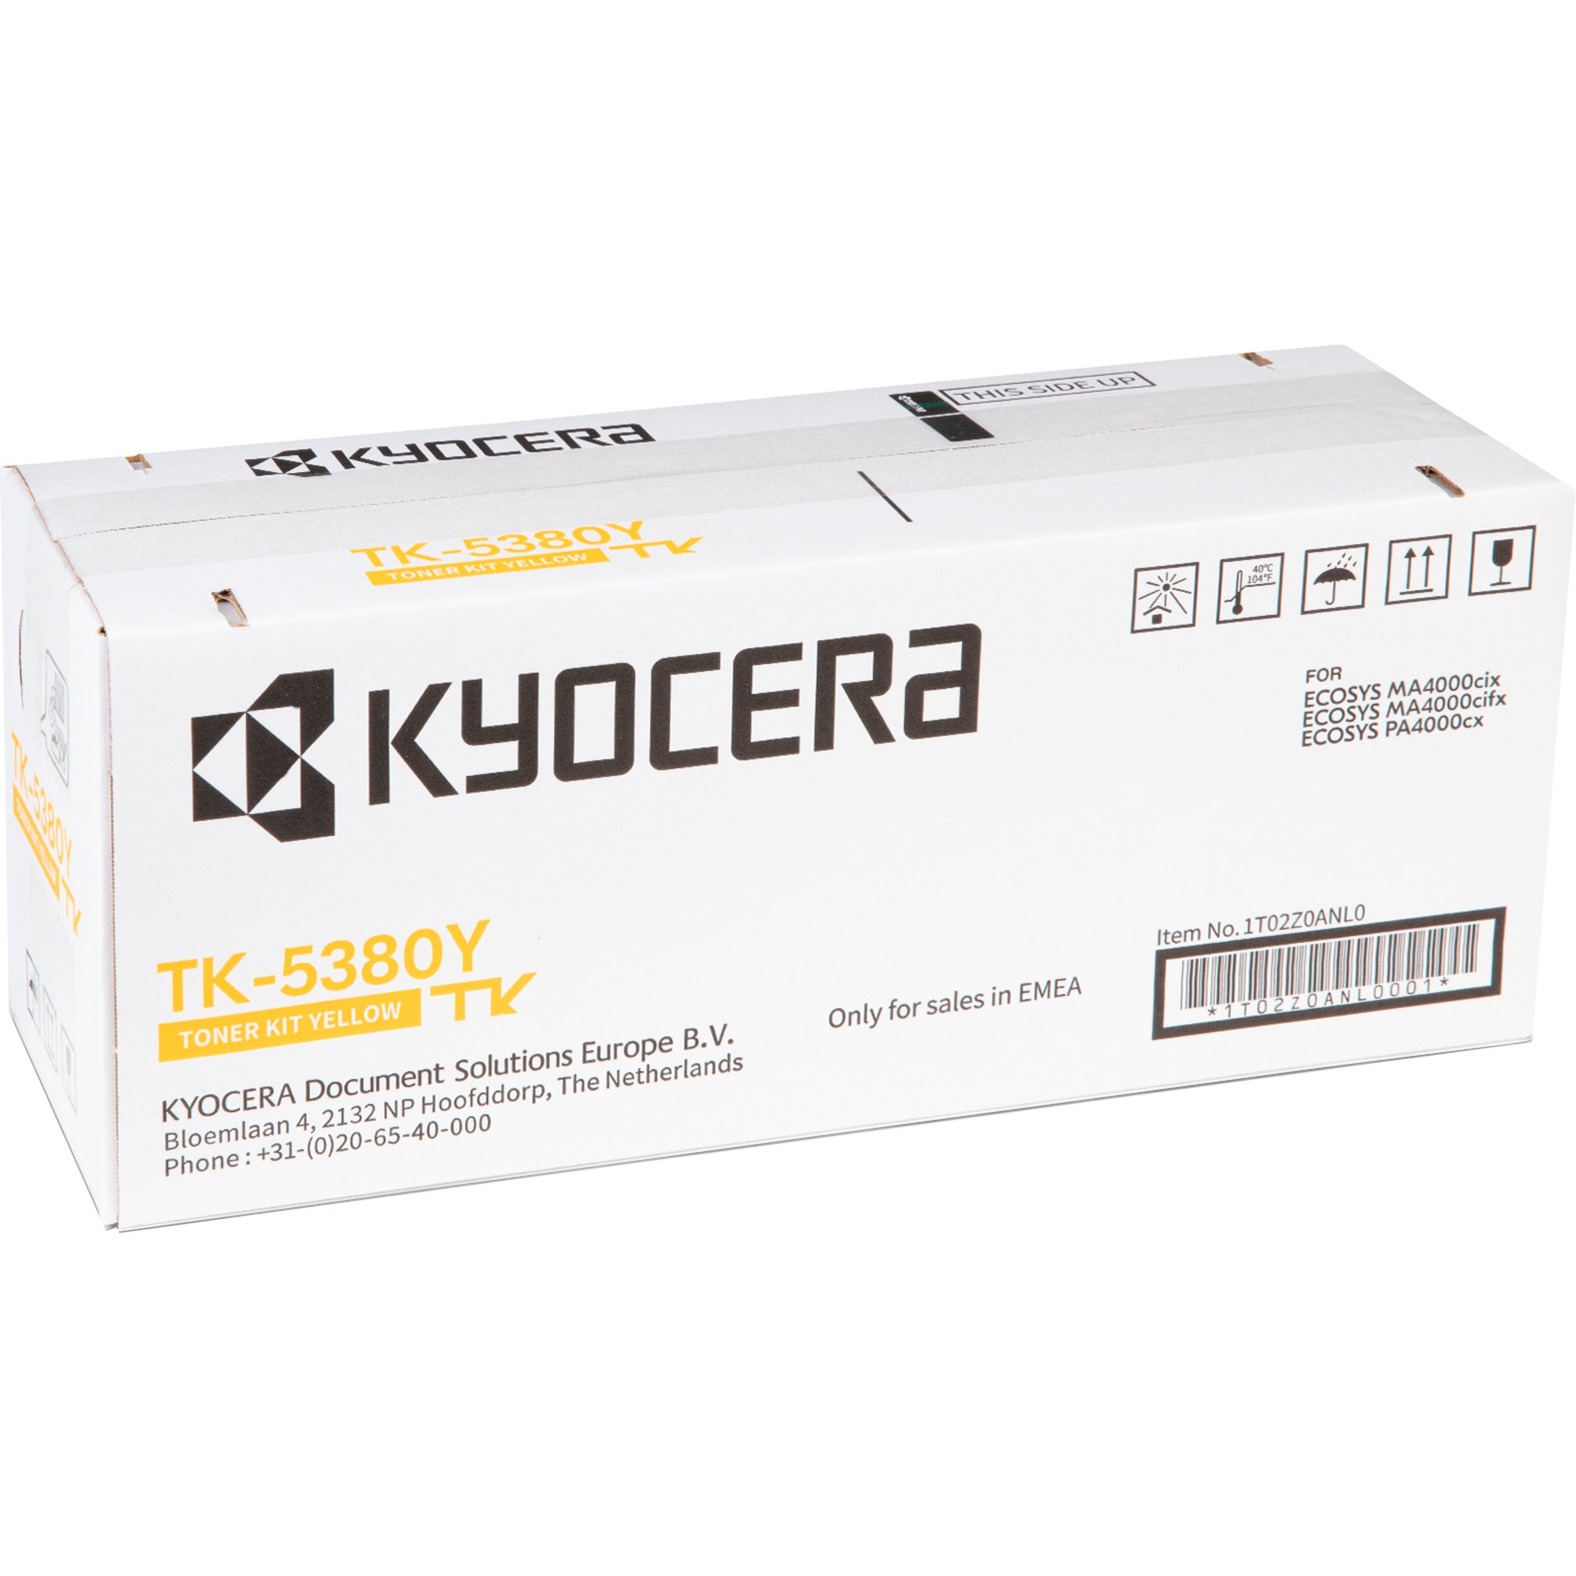 Toner gelb TK-5380Y von Kyocera